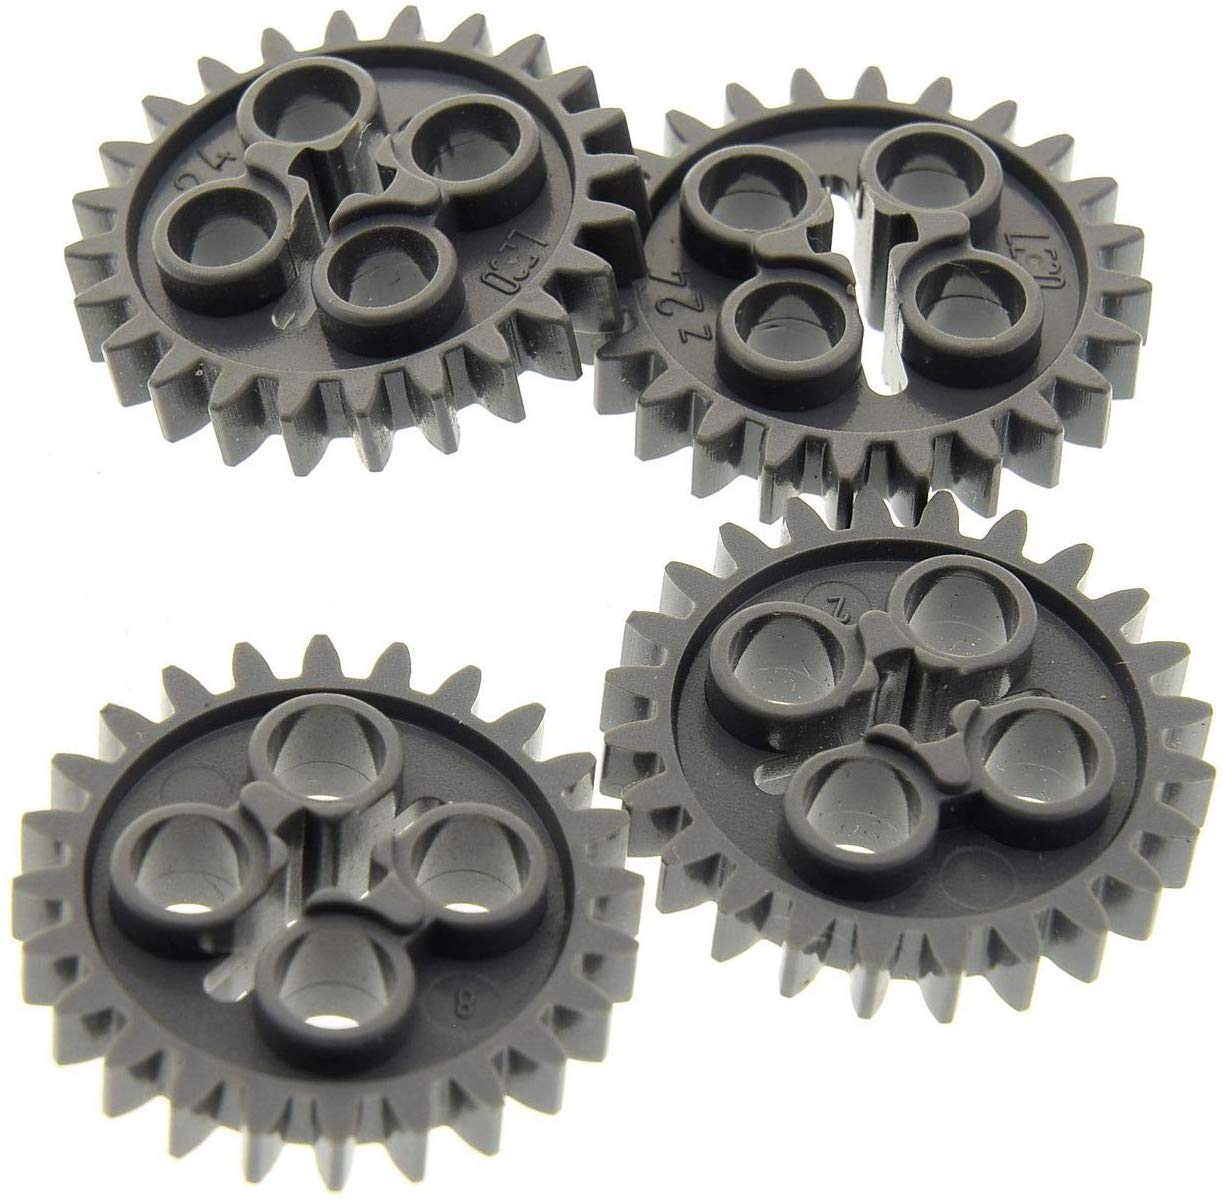 4 x Lego Technic Gear Wheel Dark Grey Z24 Gears Teeth Wheel Technique 24505